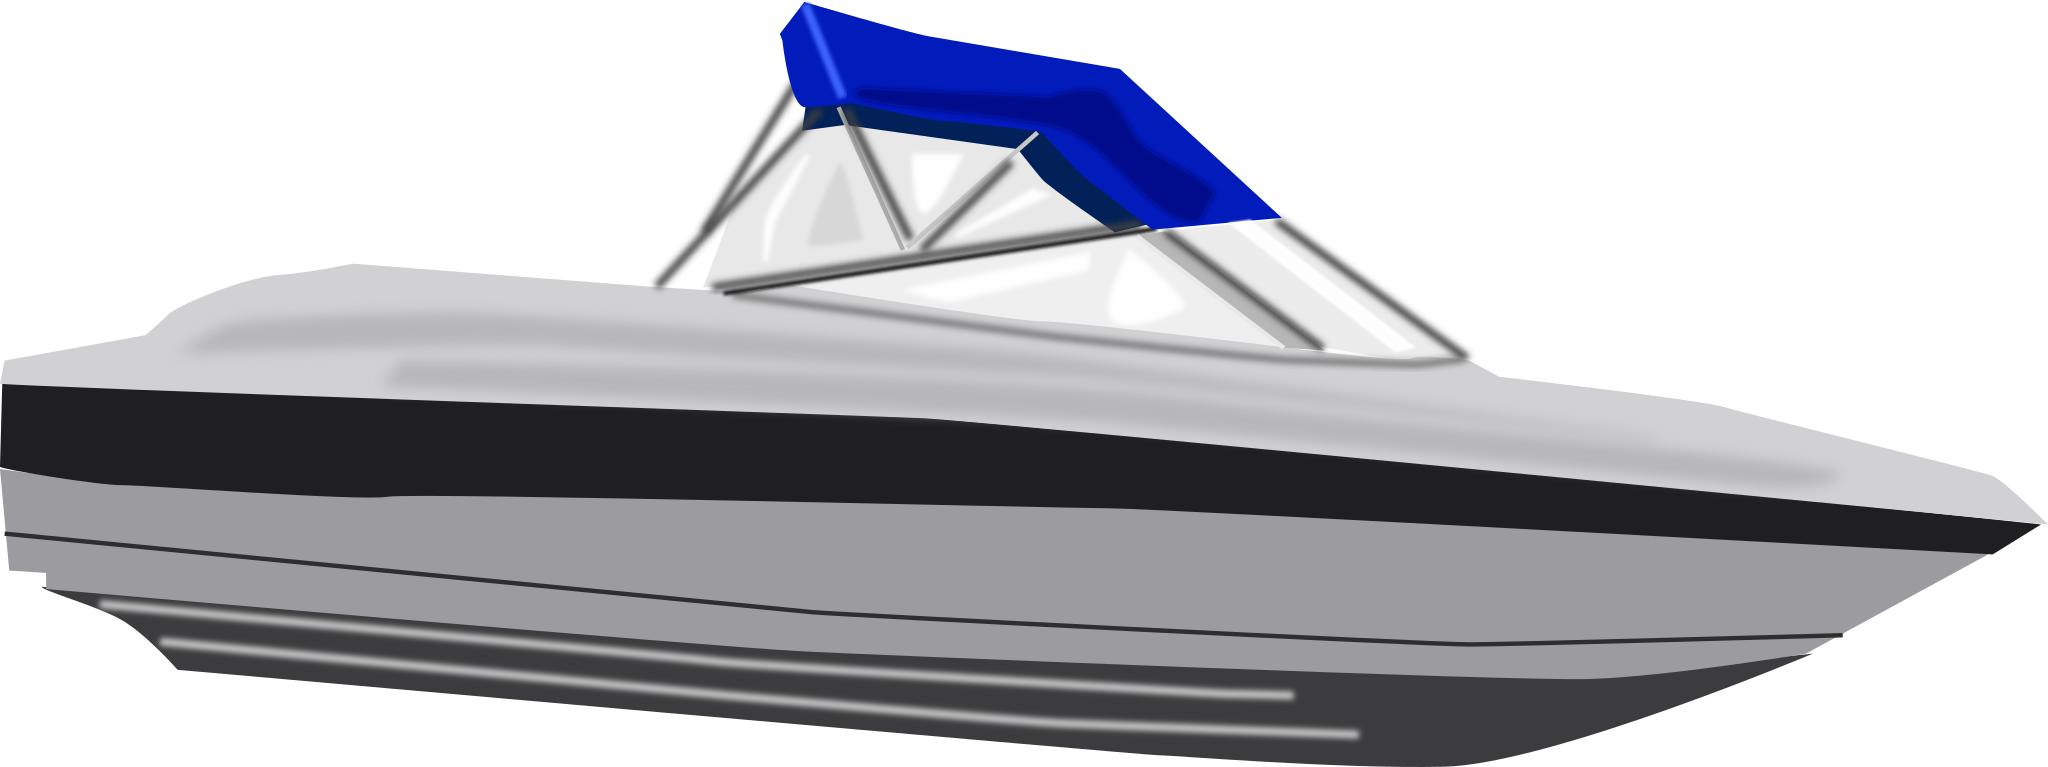 Лодка вид с боку